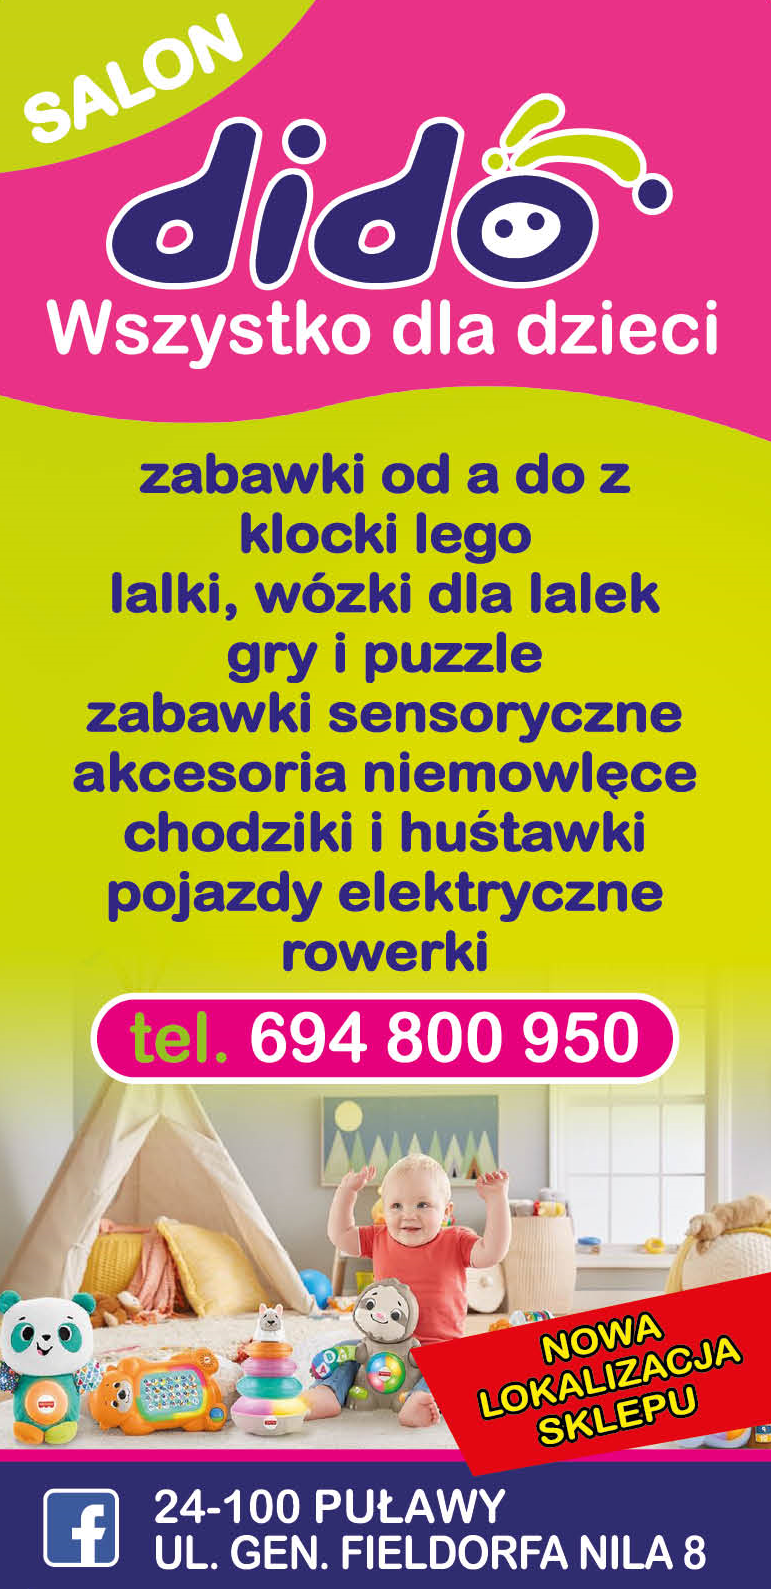 SALON DIDO Wszystko Dla Dzieci Puławy Zabawki / Akcesoria Niemowlęce / Klocki Lego / Lalki / Rowerki